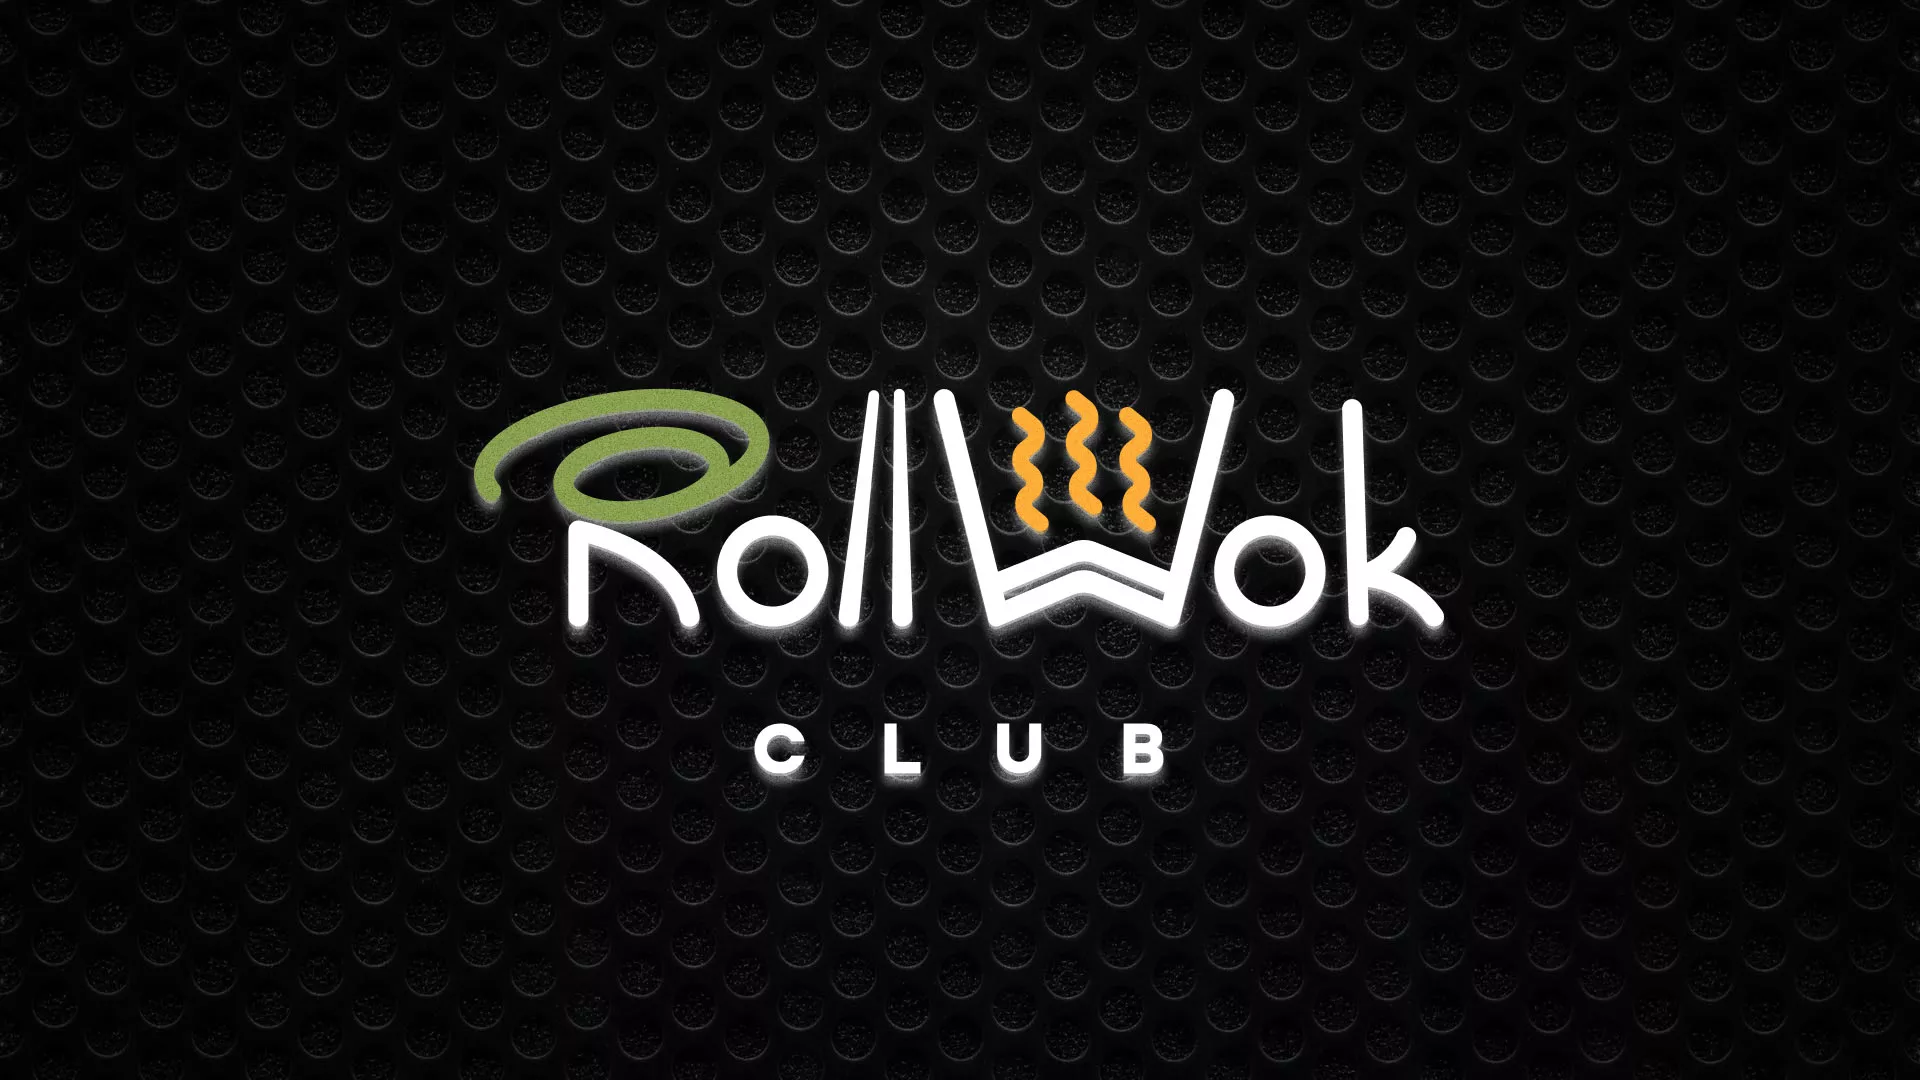 Брендирование торговых точек суши-бара «Roll Wok Club» в Строителе